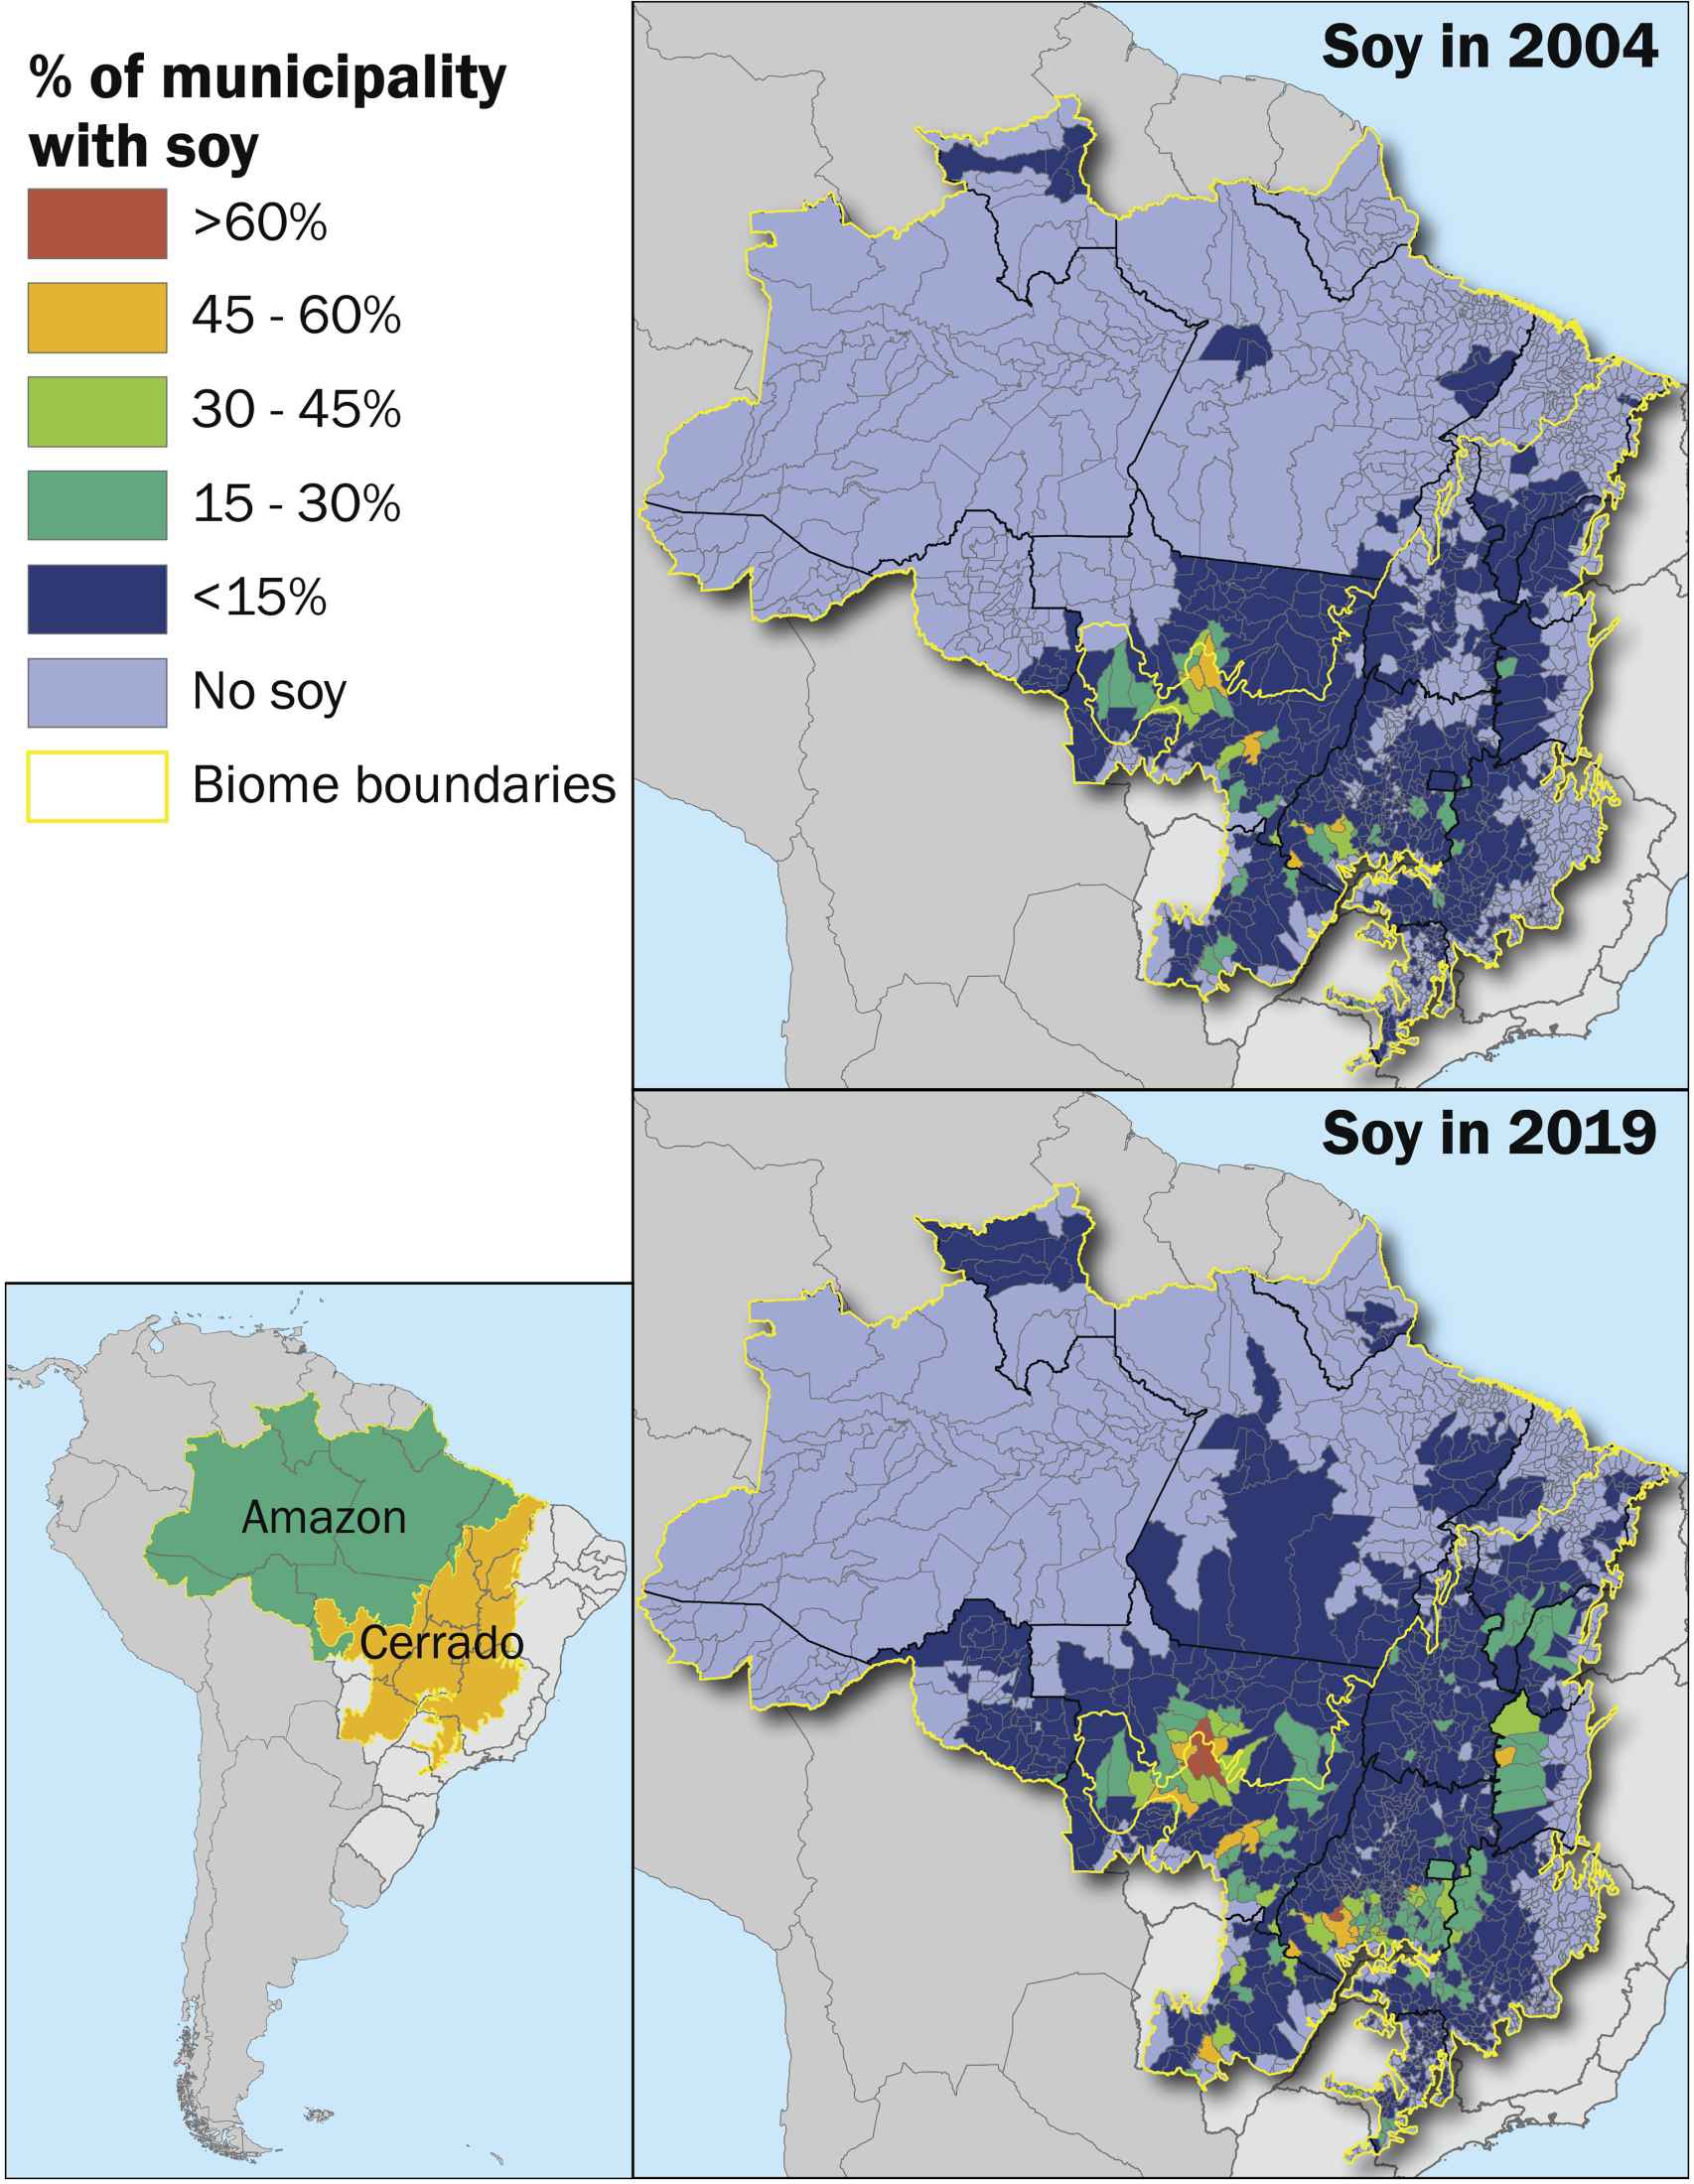 Porcentaje de superficie municipal plantada de soja en 2004 y 2019 en las regiones de Amazonia y Cerrado de Brasil.